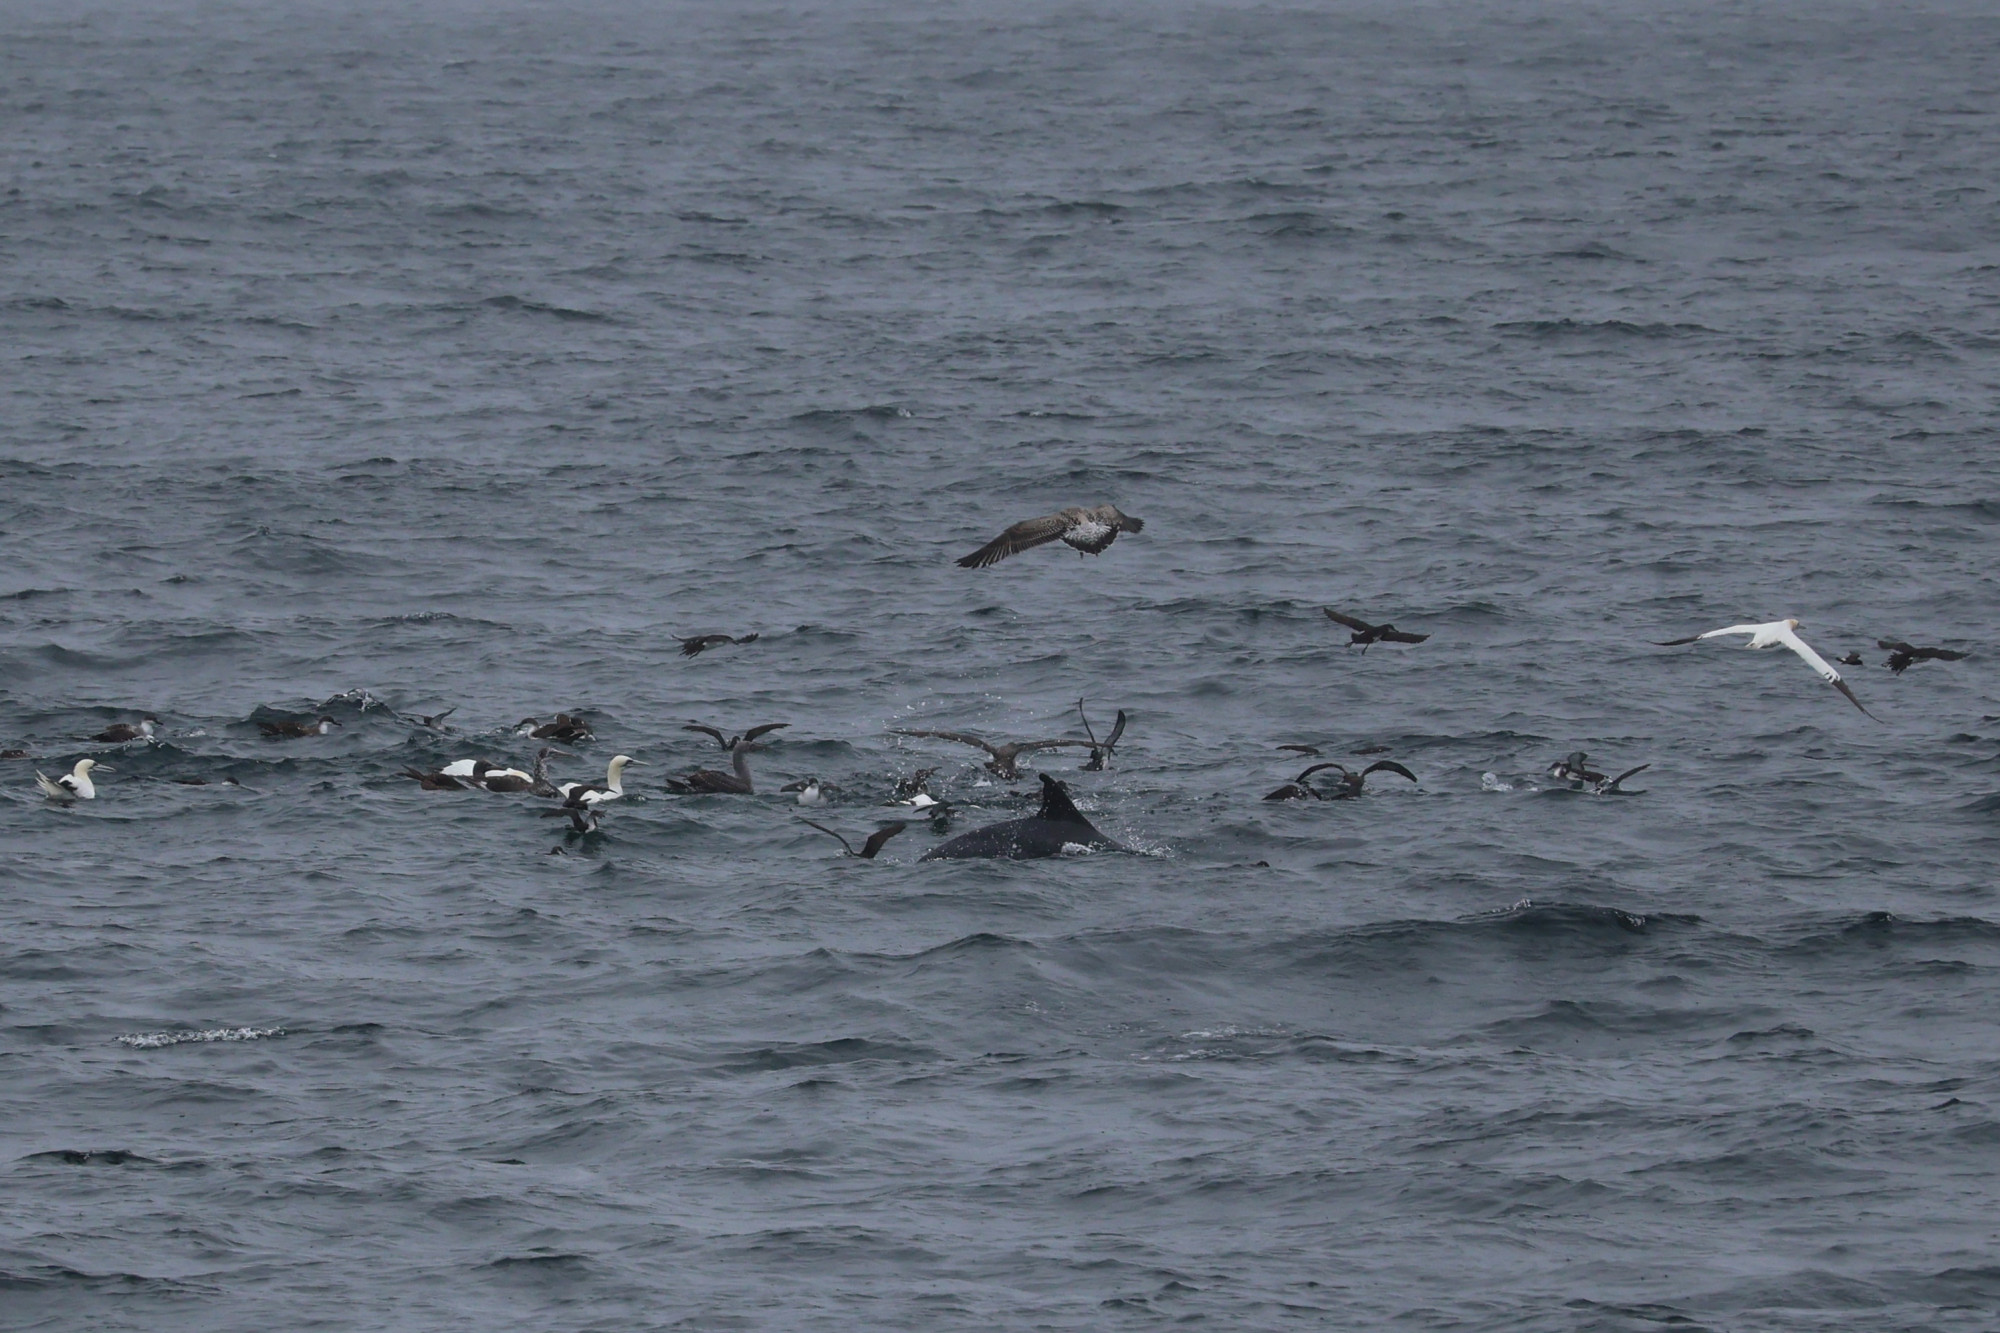 Ahol sok a hal, ott sok a tengeri madár is, és előbb-utóbb felbukkannak a halakkal táplálkozó bálnák is. A képen egy csukabálna uszonya látható.